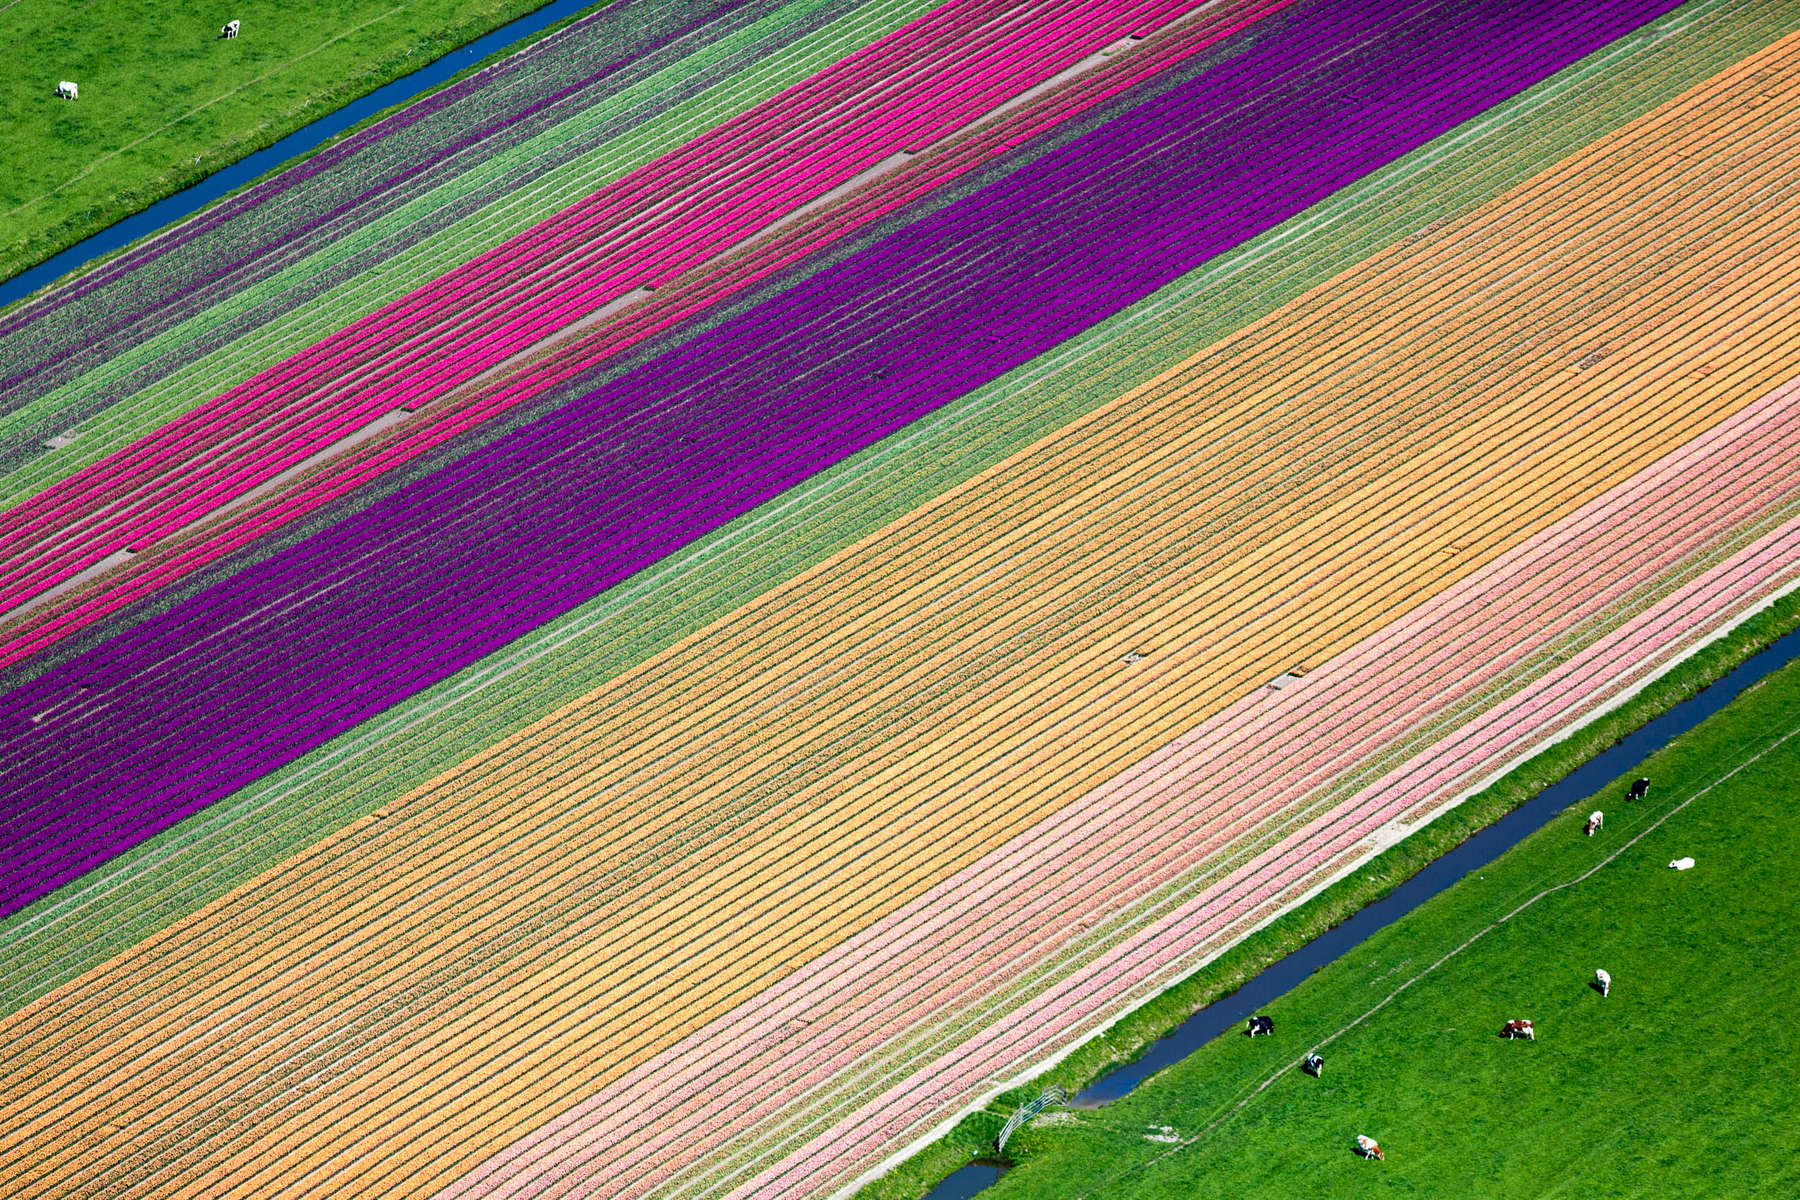 Tulip Farming, Hoorn, Netherlands 2015 (150502-0600)